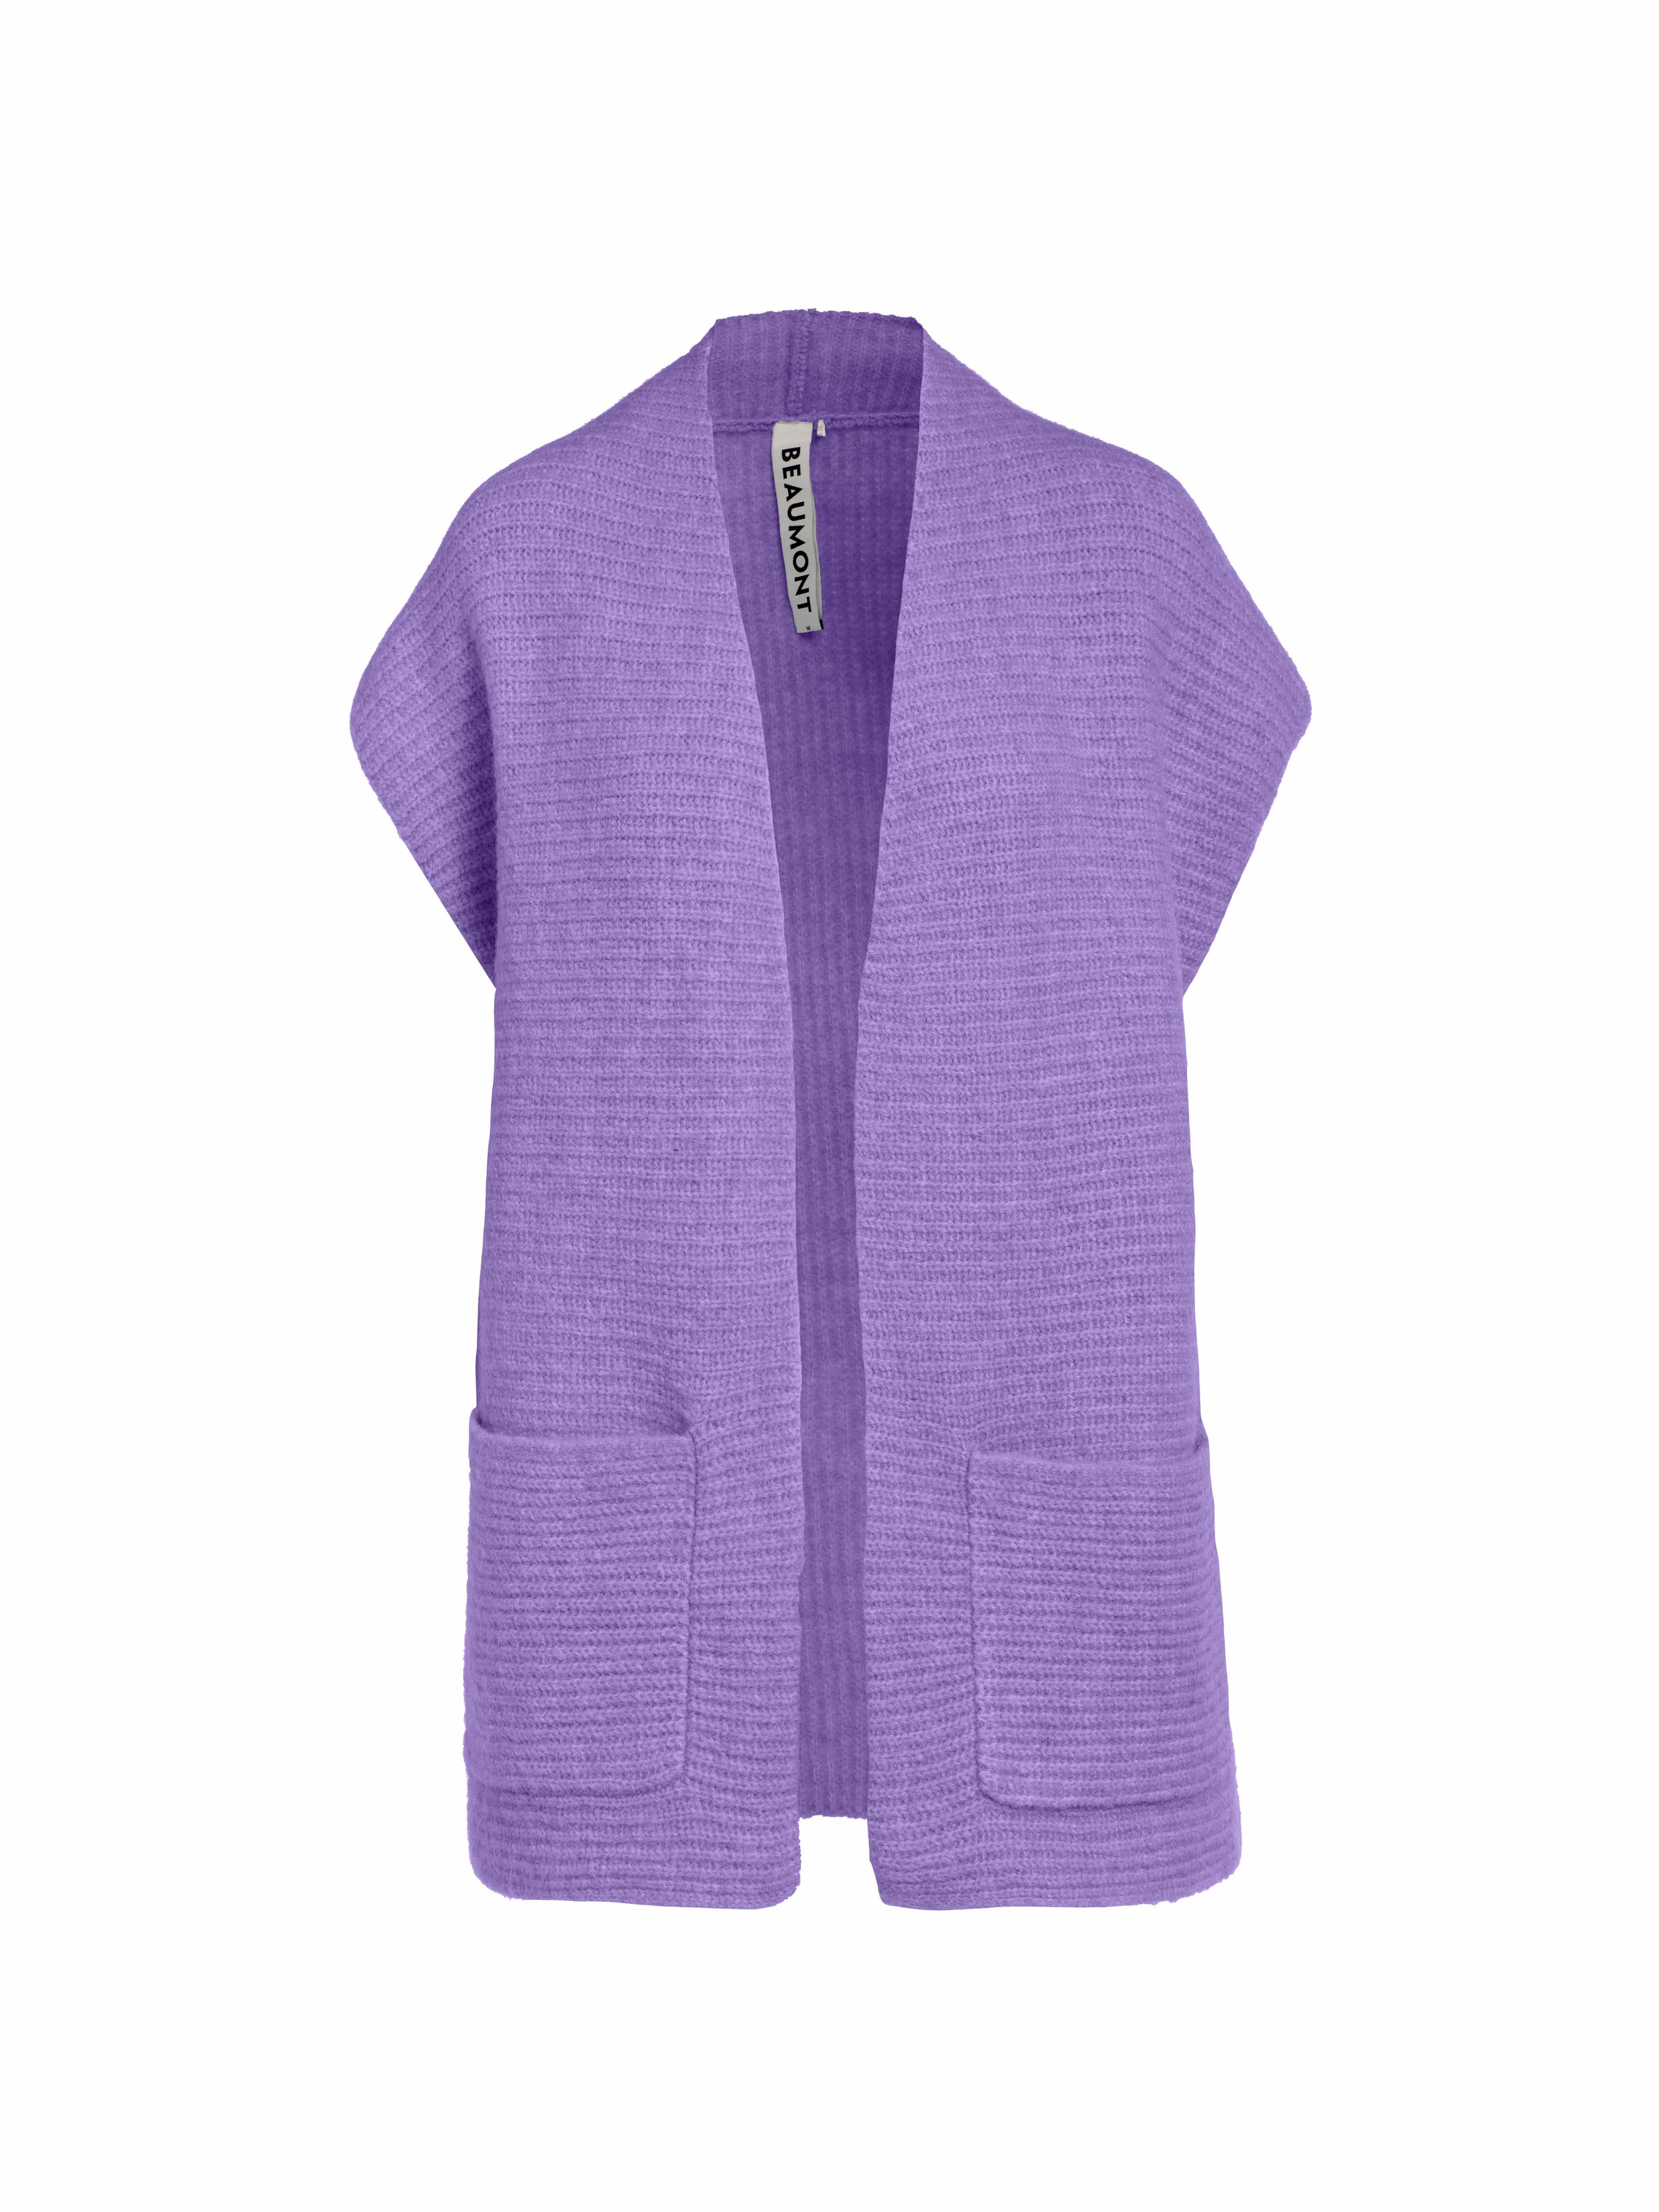 Beaumont - Mickey Vest Dahlia Purple - S - Dames